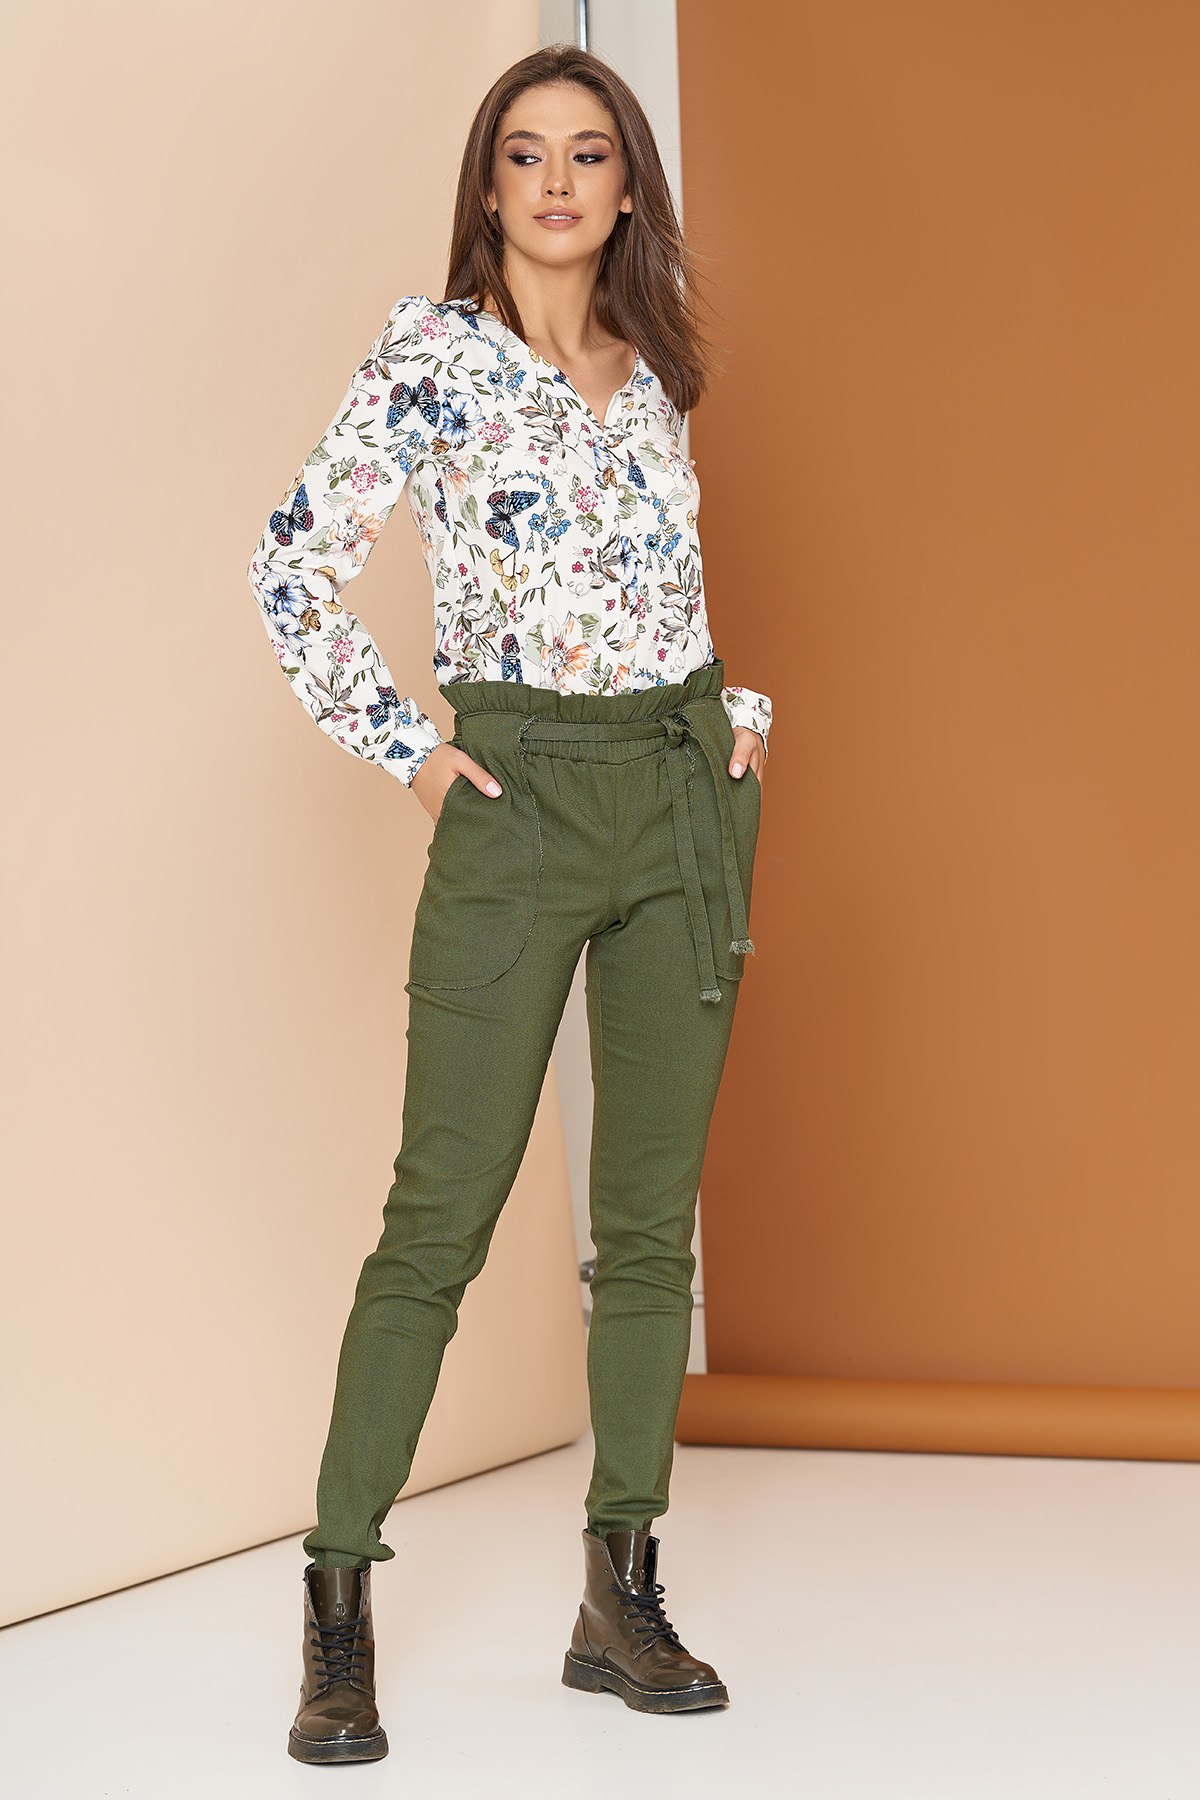 Зеленые брюки: с чем носить и как сочетать?
зеленые брюки: с чем носить и как сочетать?